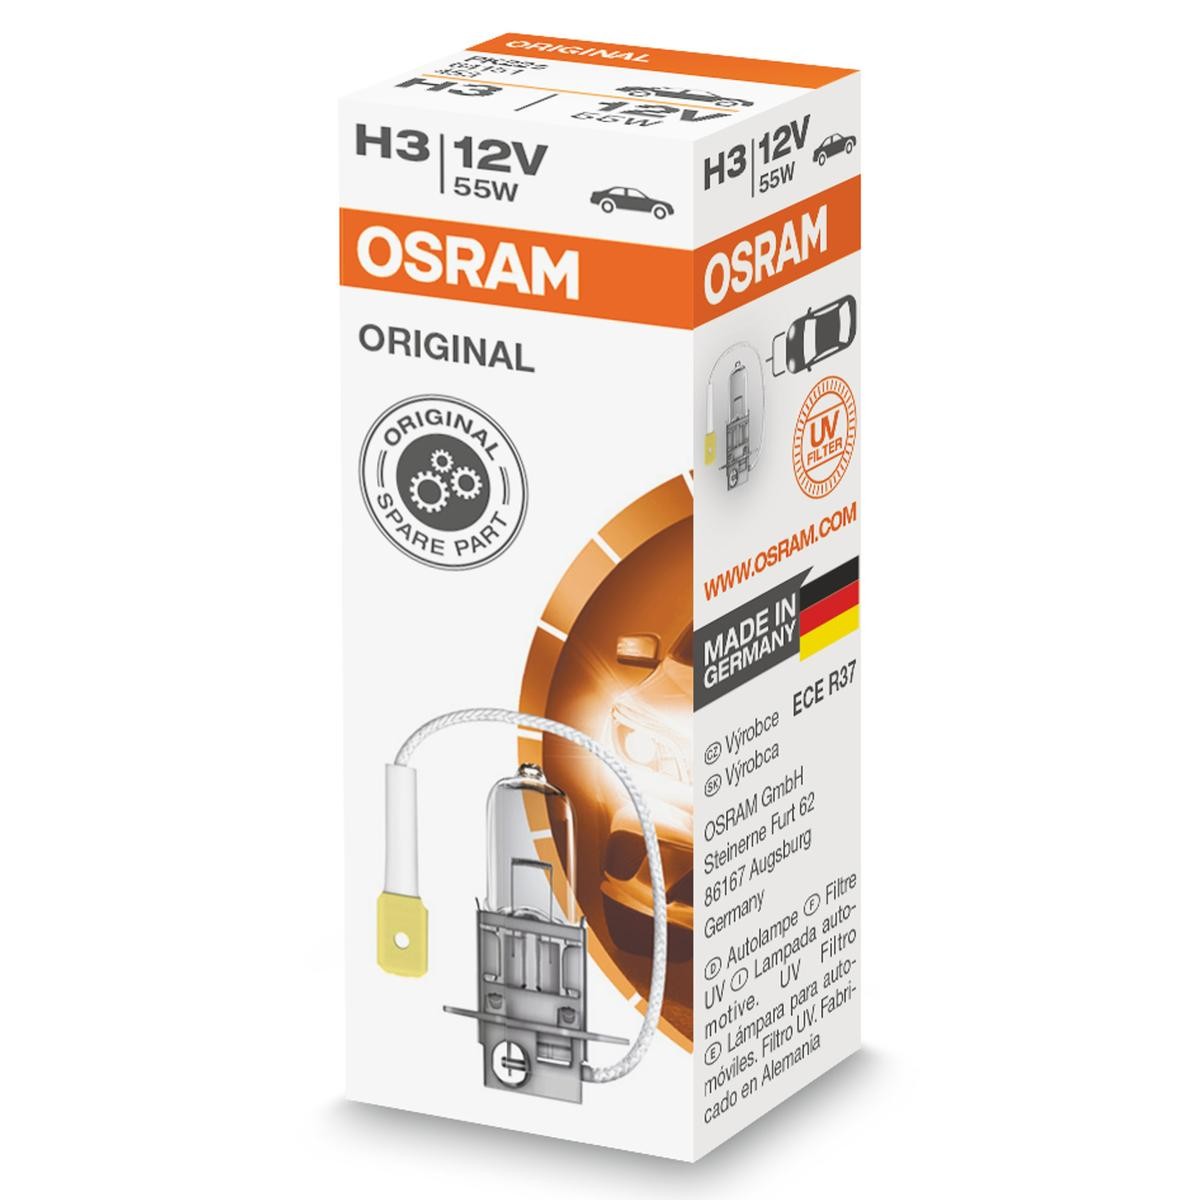 64151 OSRAM Fog lamp bulb BMW H3 12V 55W PK22s, 3200K, Halogen